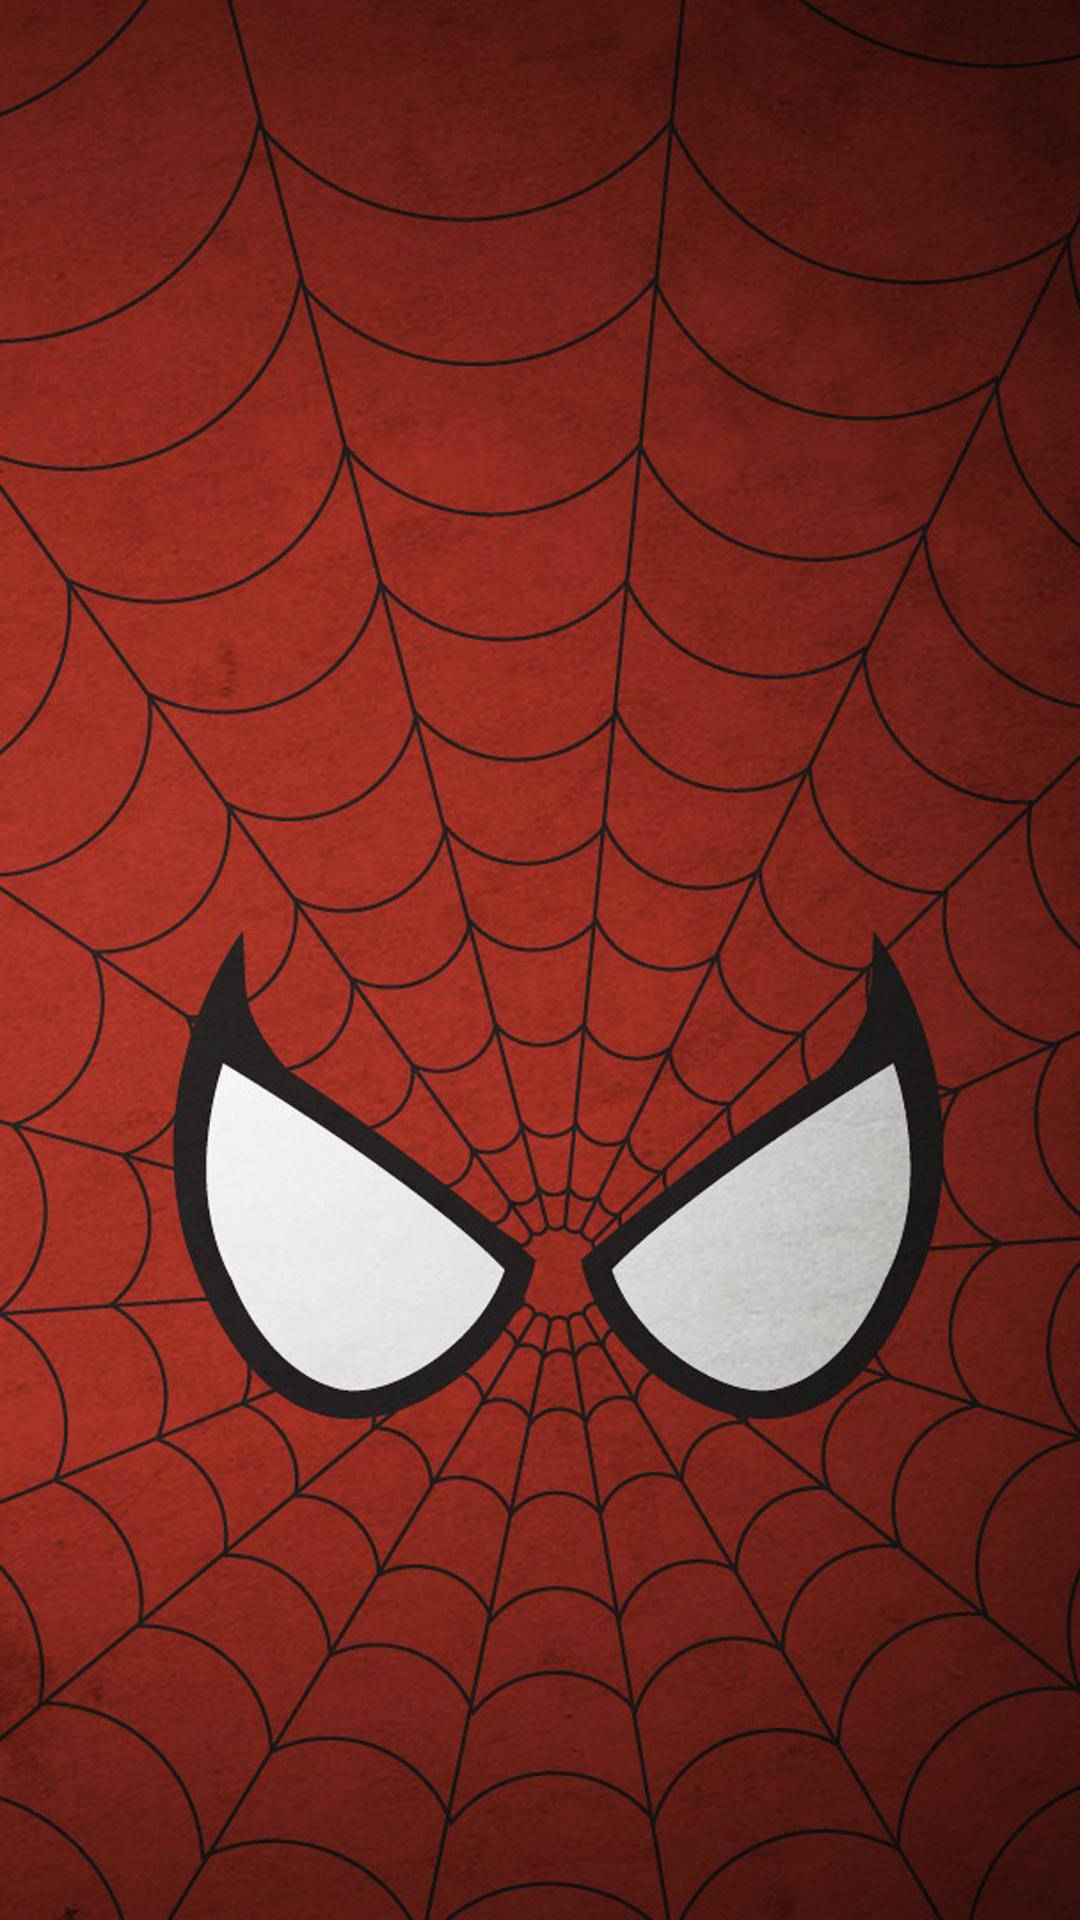 73+] Spider Web Wallpaper - WallpaperSafari